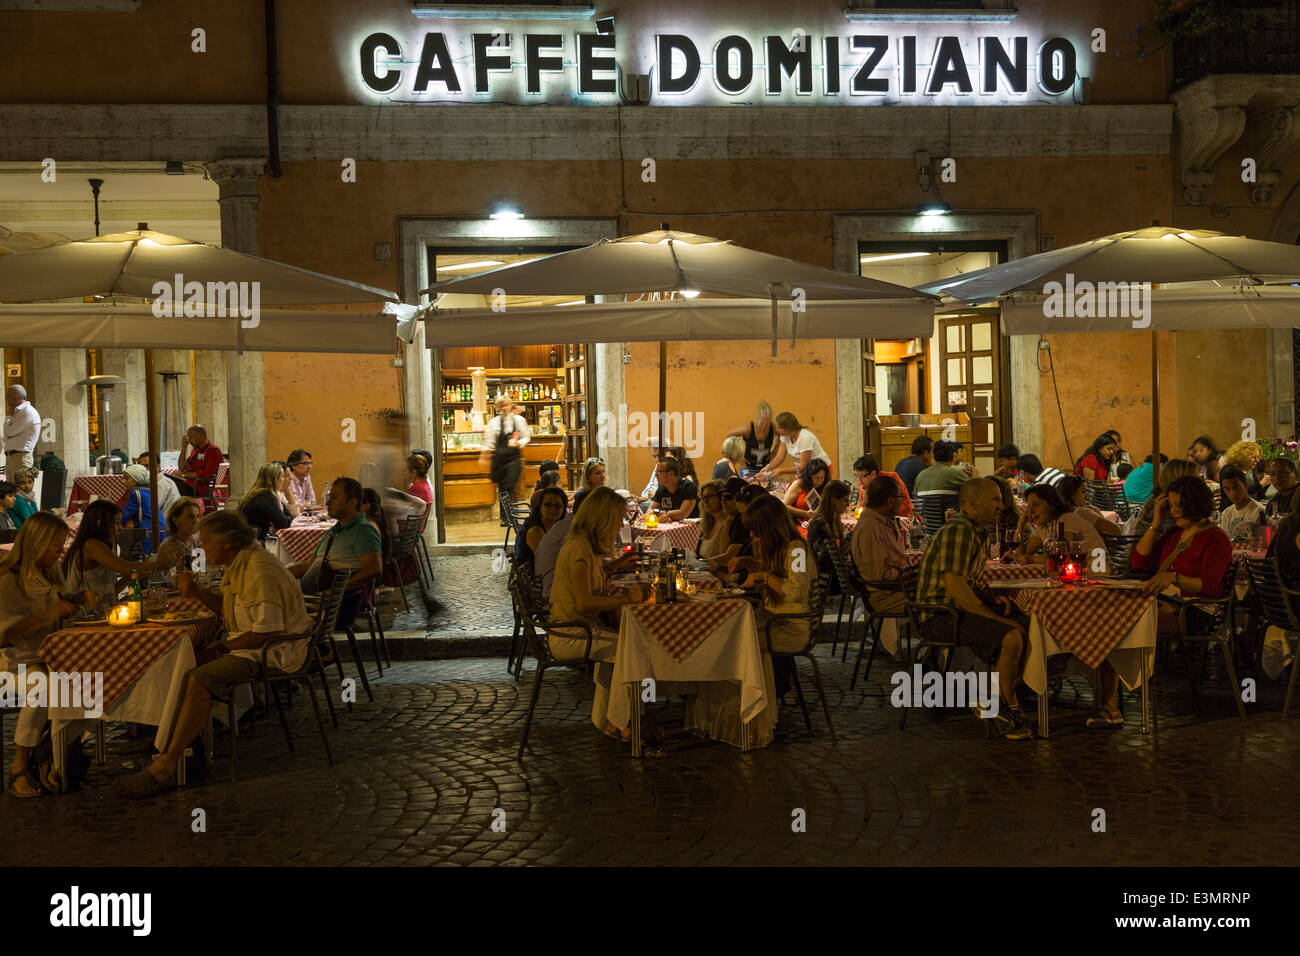 Caffè Domiziano, Piazza Navona, 88, Rome, Italy Stock Photo